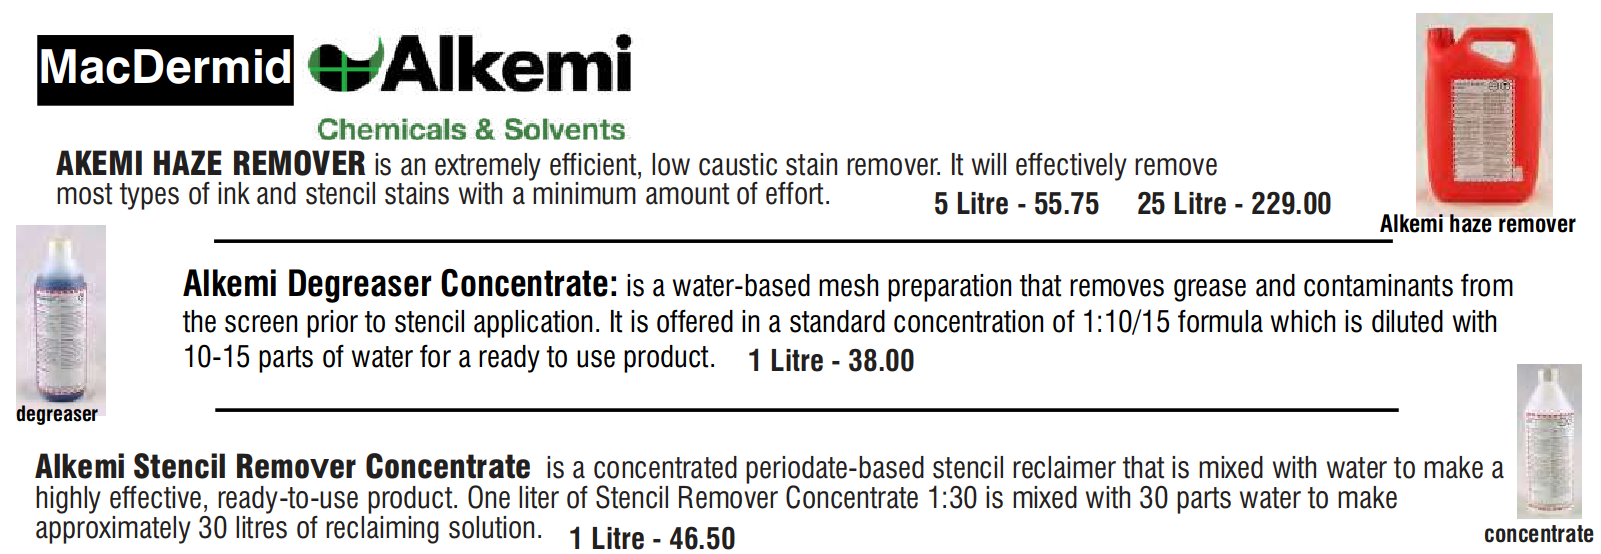 Alkemi prices 1 1 - Screen Emulsion and Stencil Removers